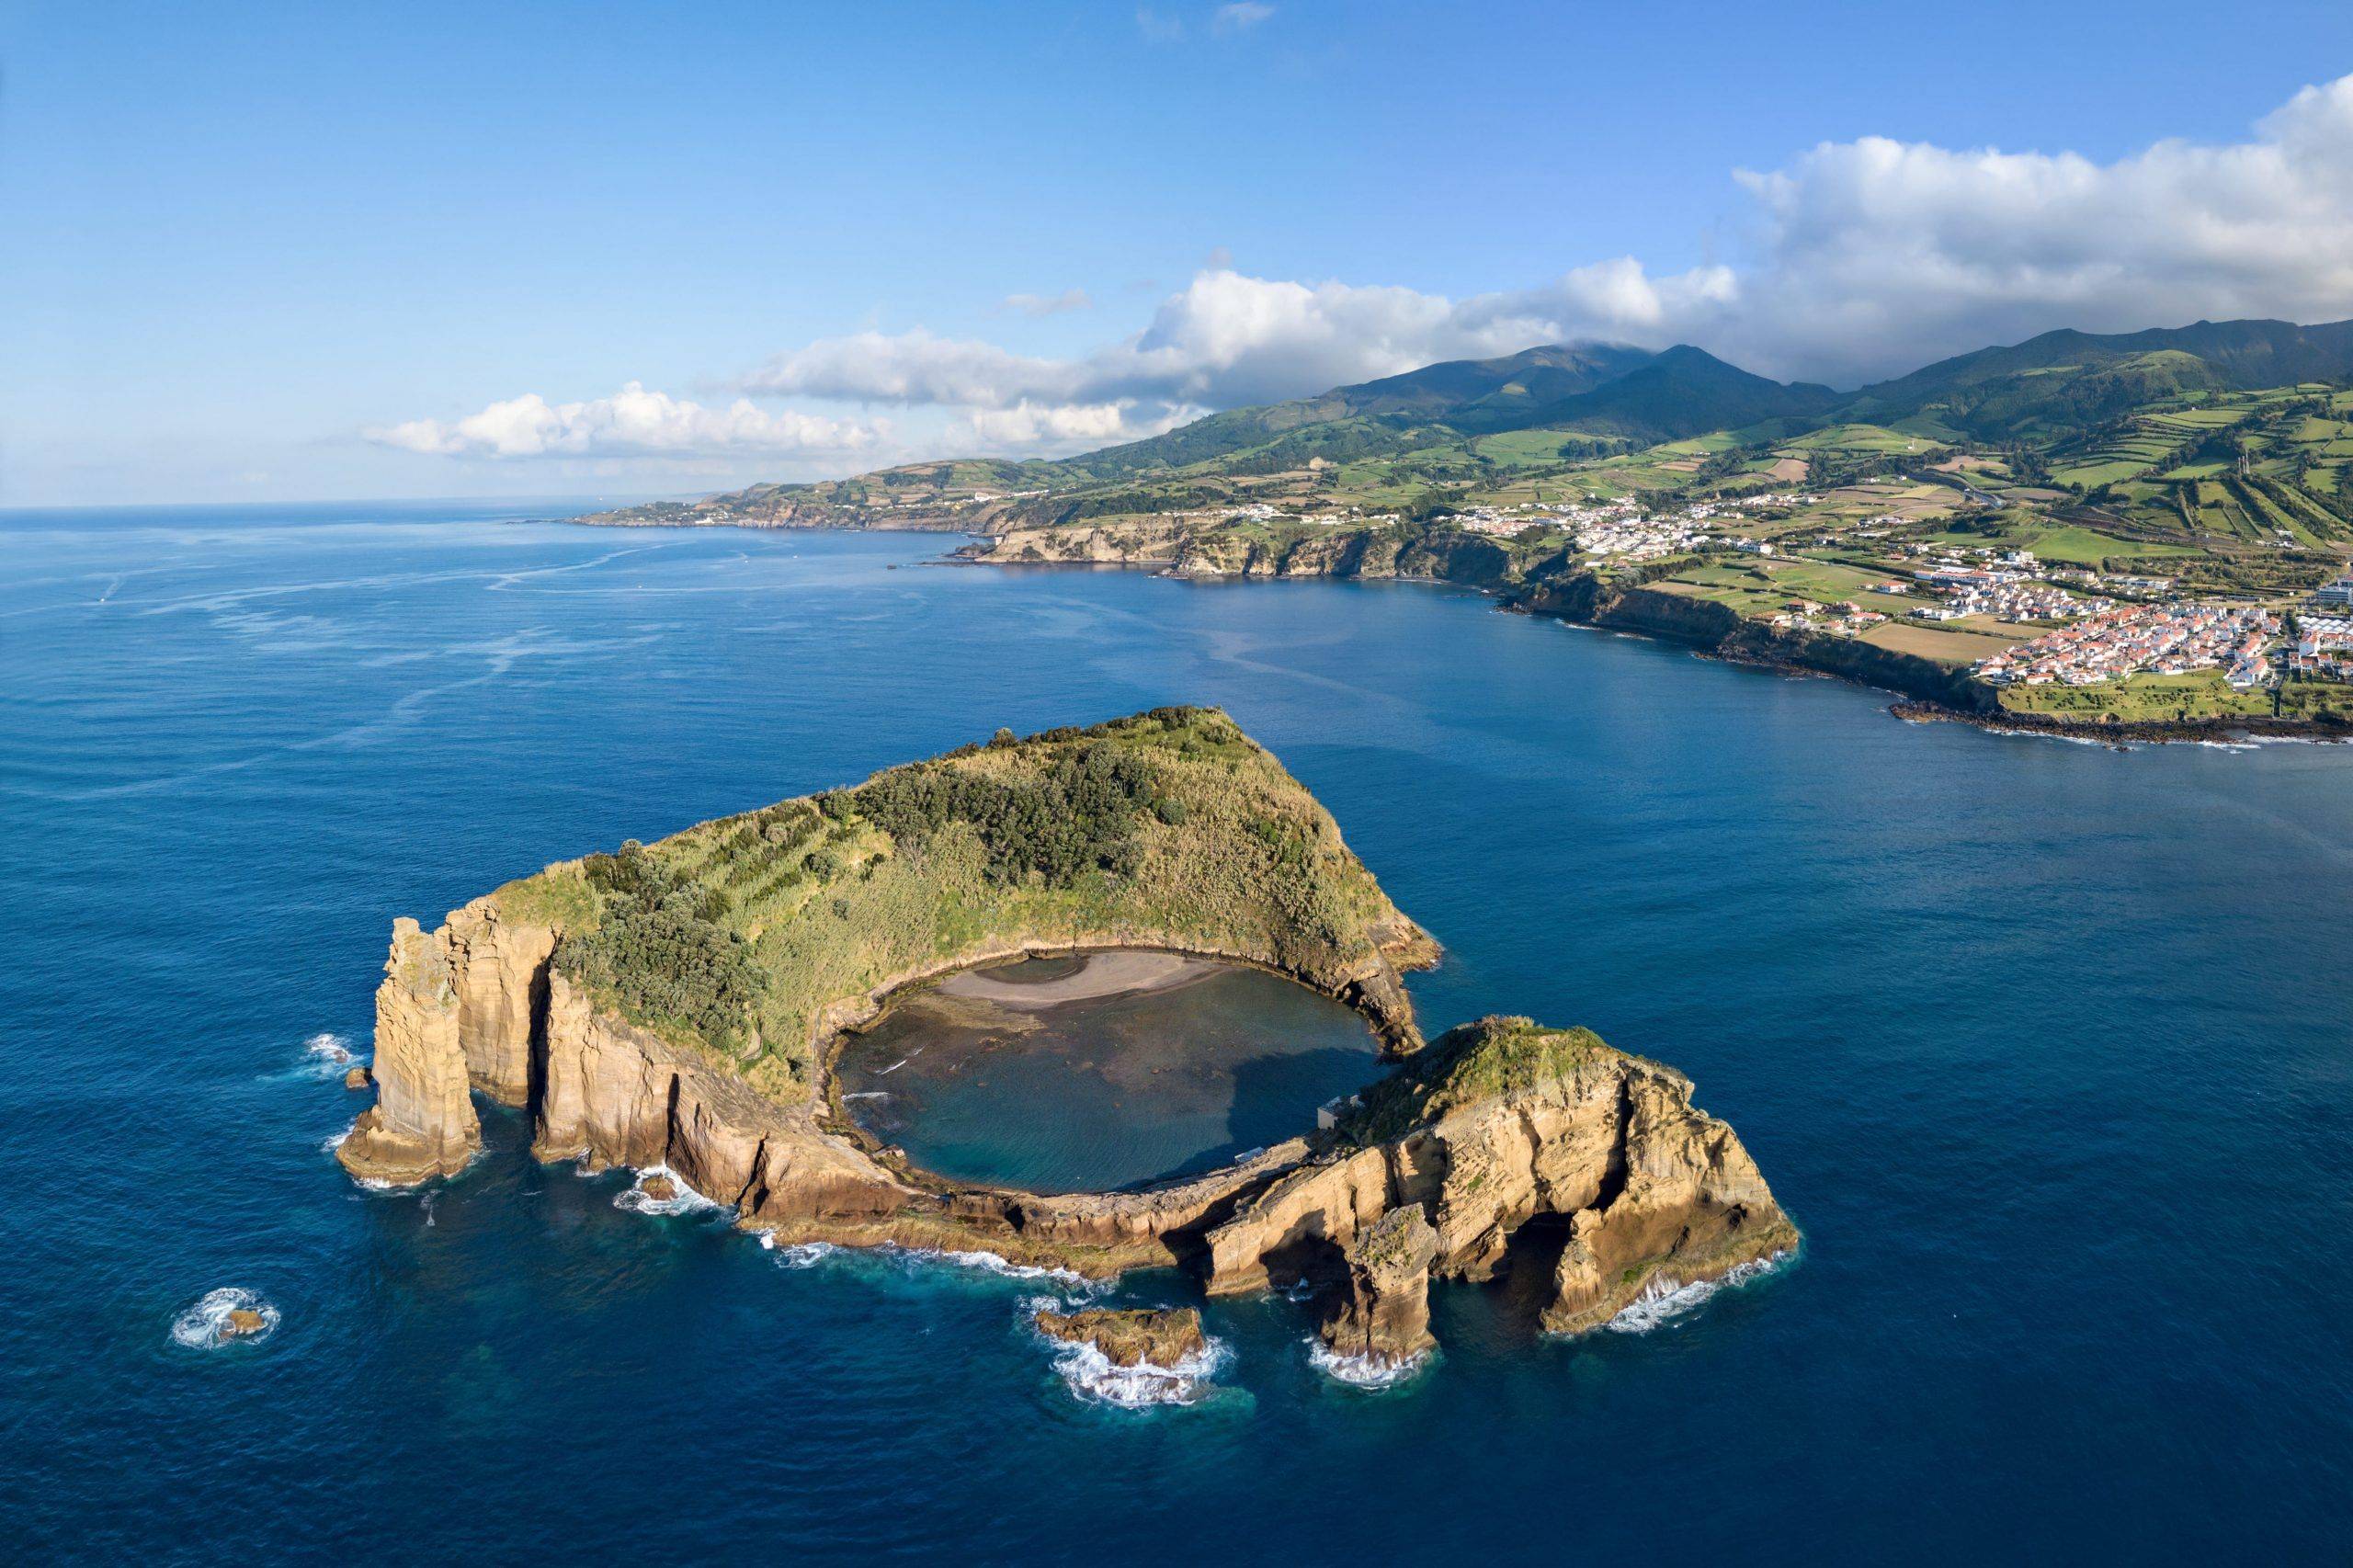 Bienvenue aux Açores